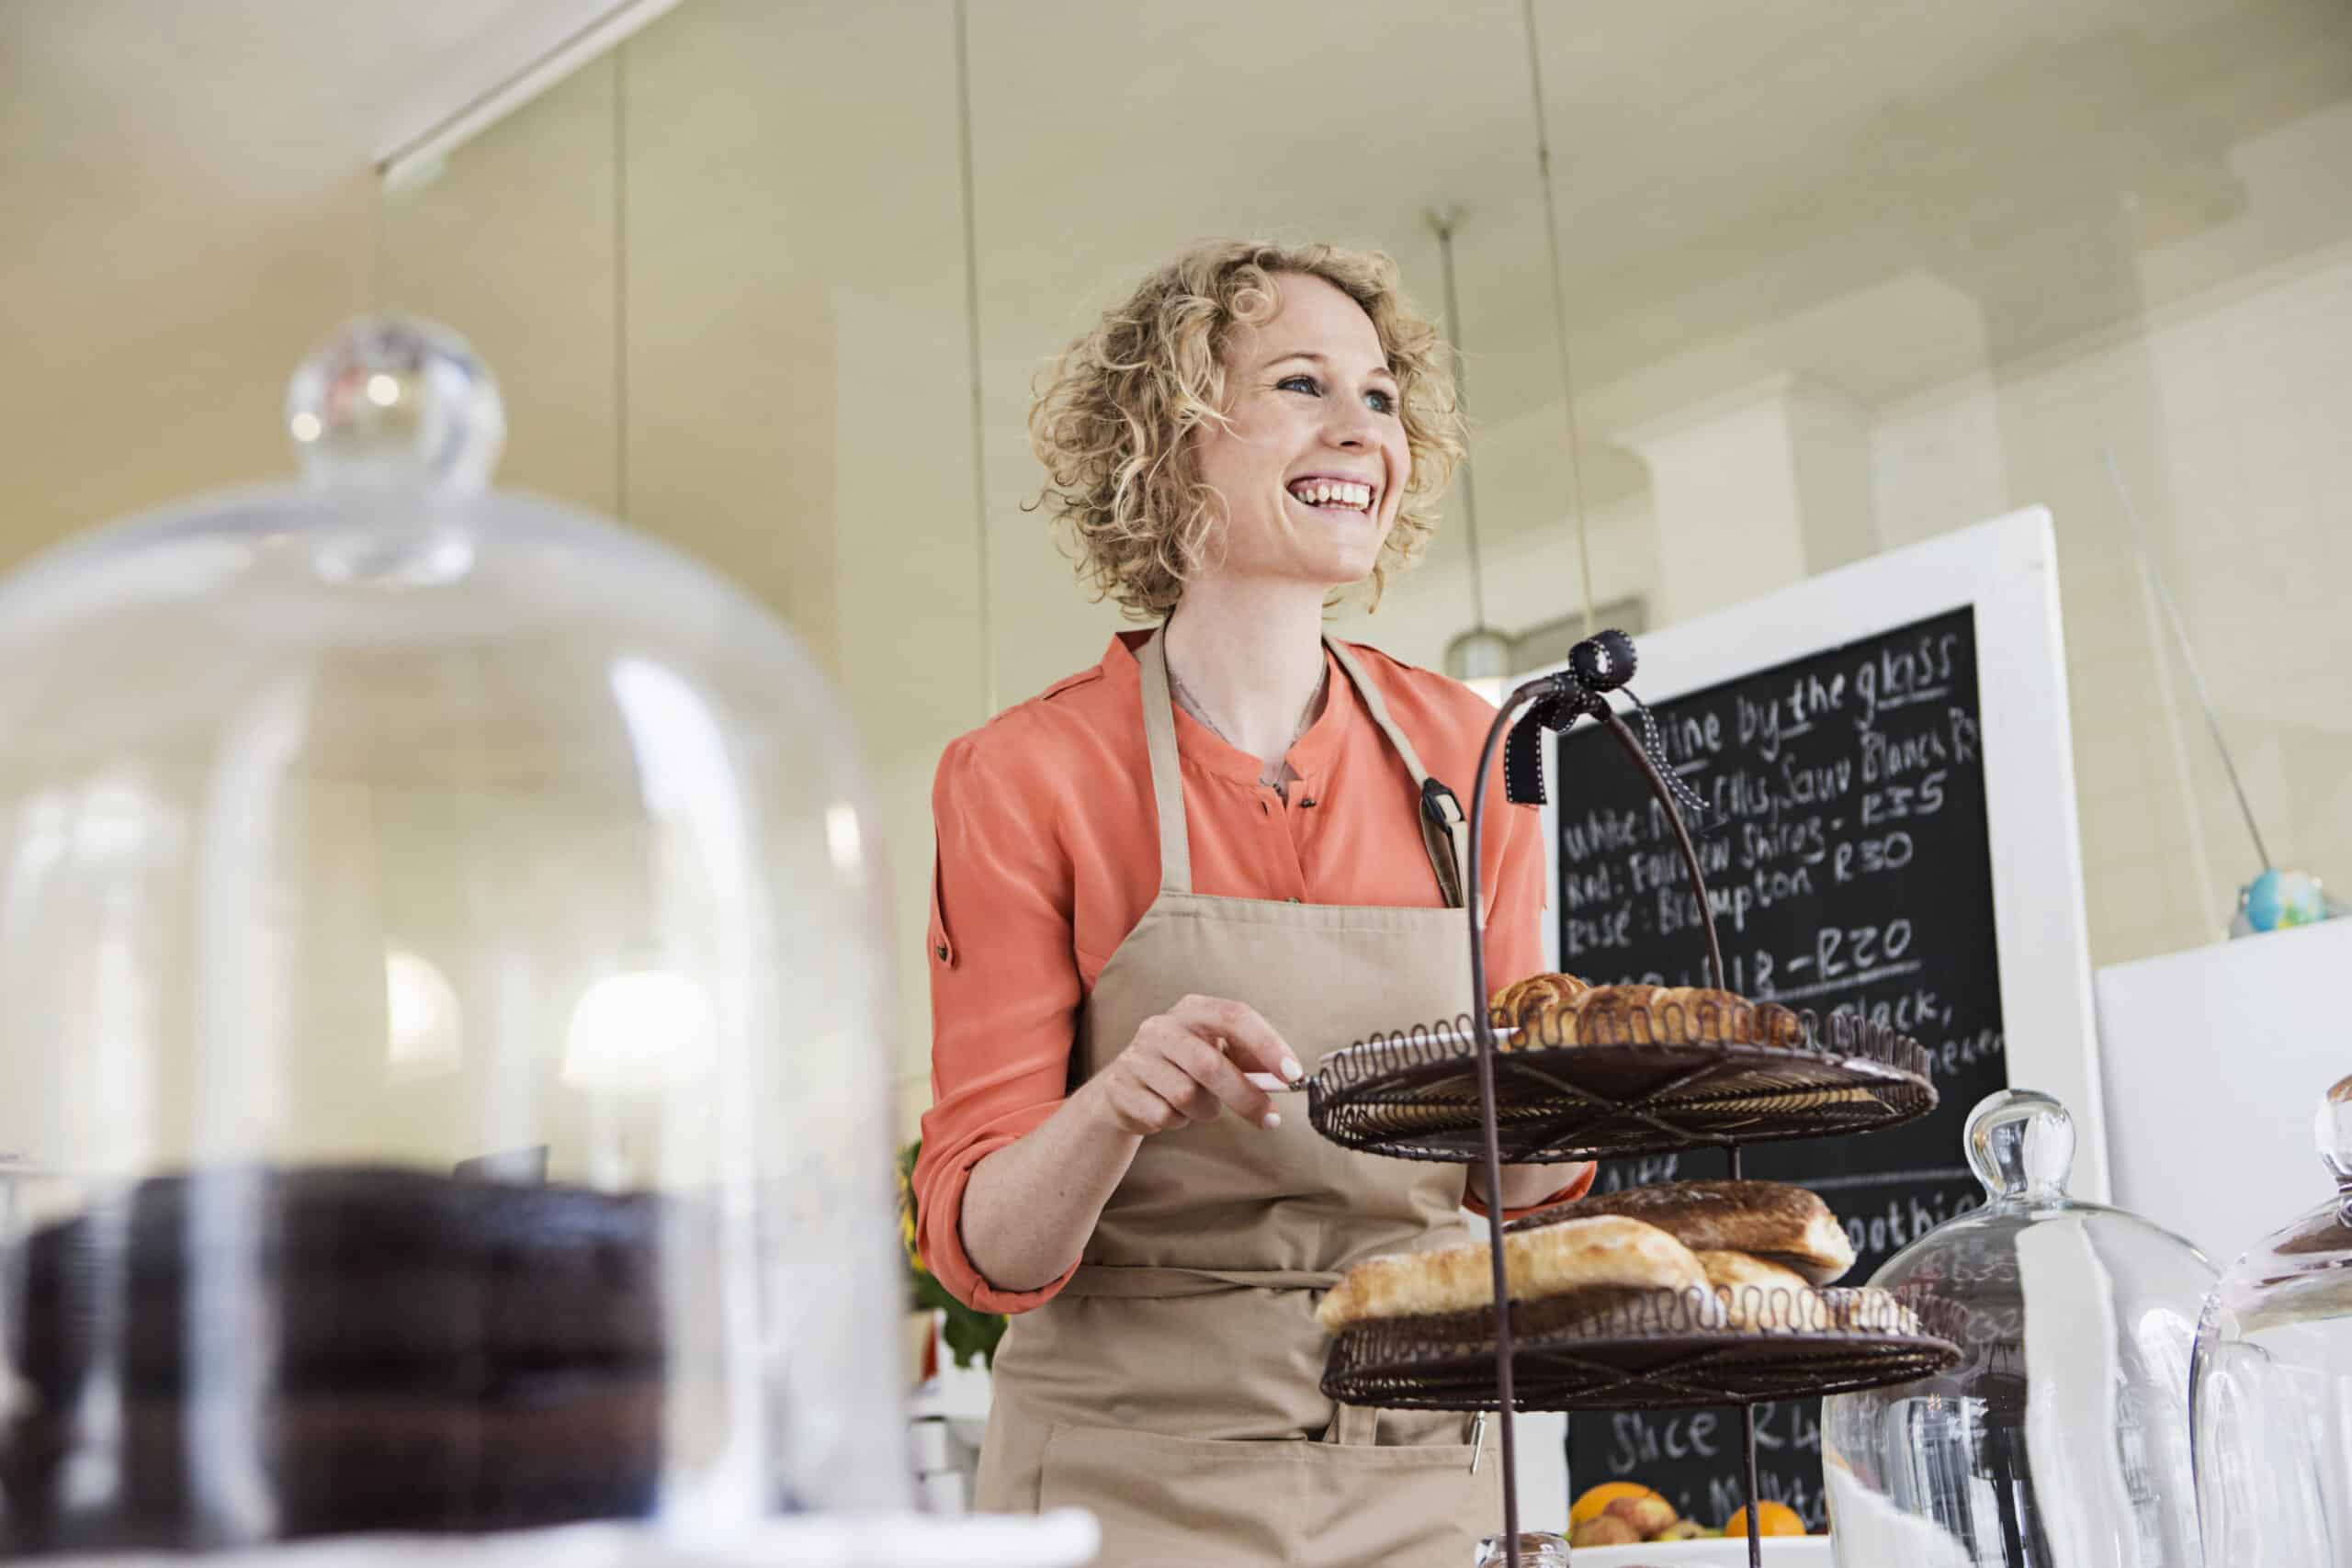 Eine fröhliche Frau in einer Schürze stellt ein Tablett mit frischem Gebäck auf die Theke eines Cafés, im Hintergrund ist eine Tafel mit der Speisekarte zu sehen. © Fotografie Tomas Rodriguez